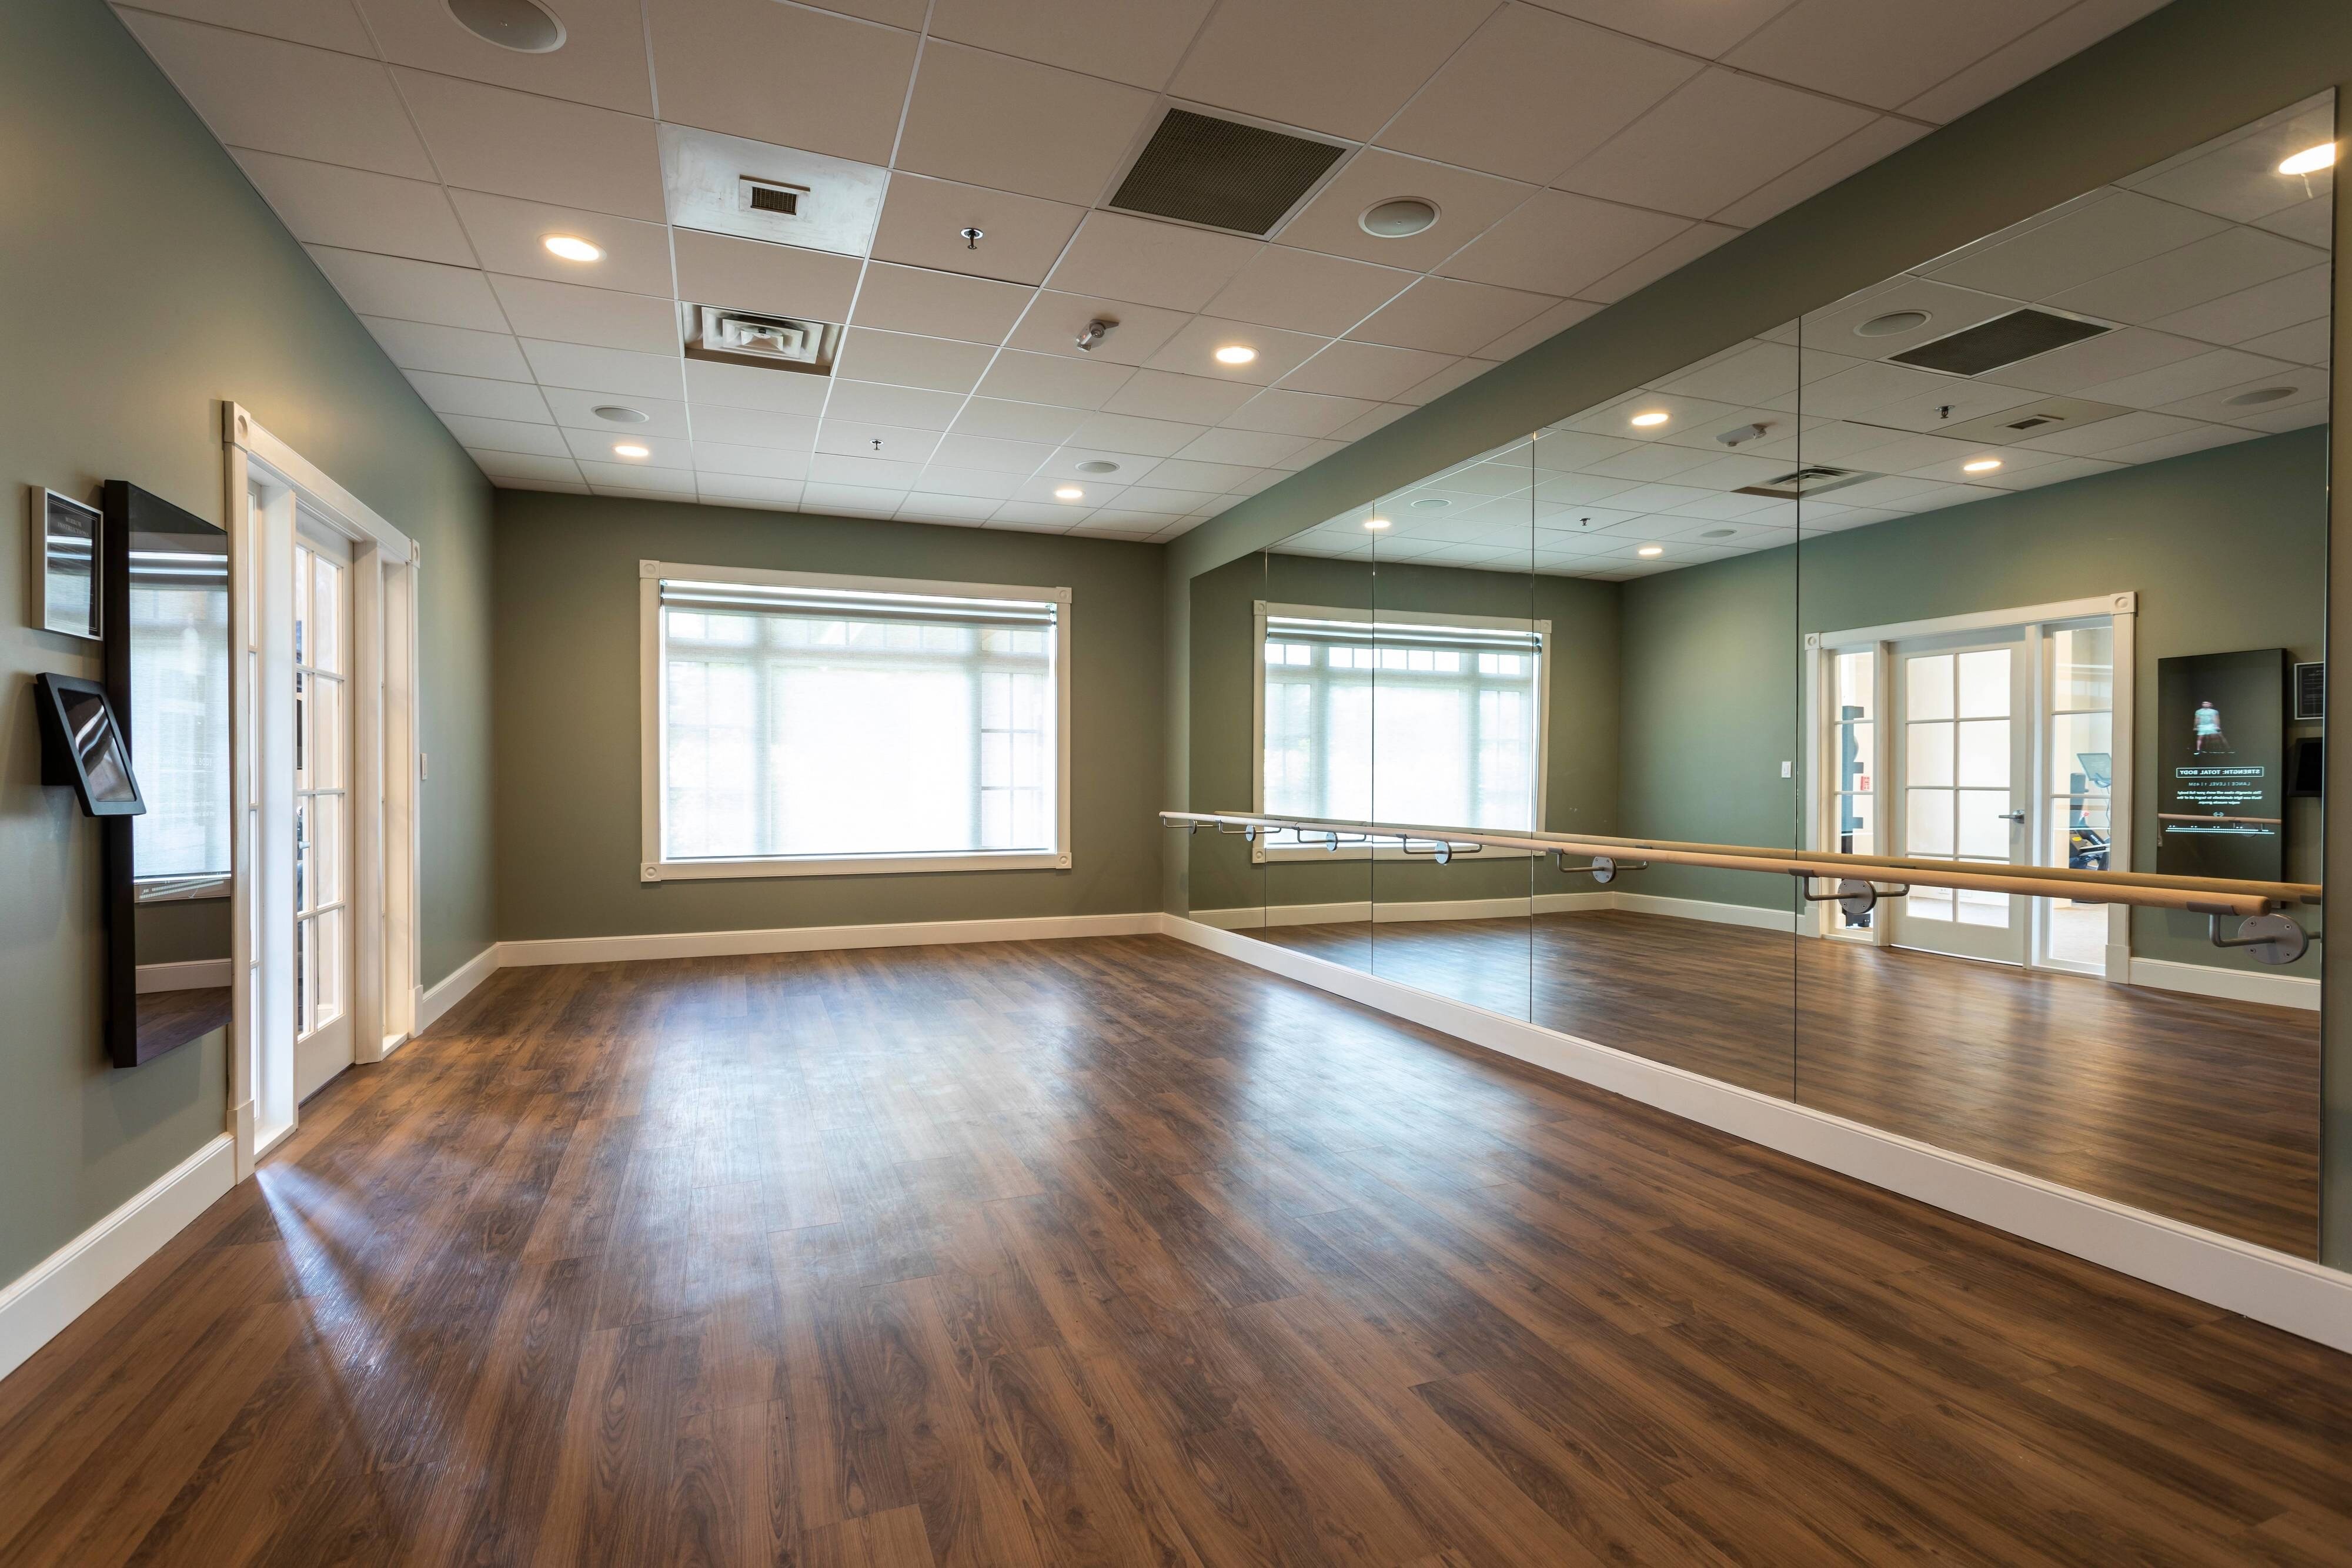 Fitness Center - Yoga Room